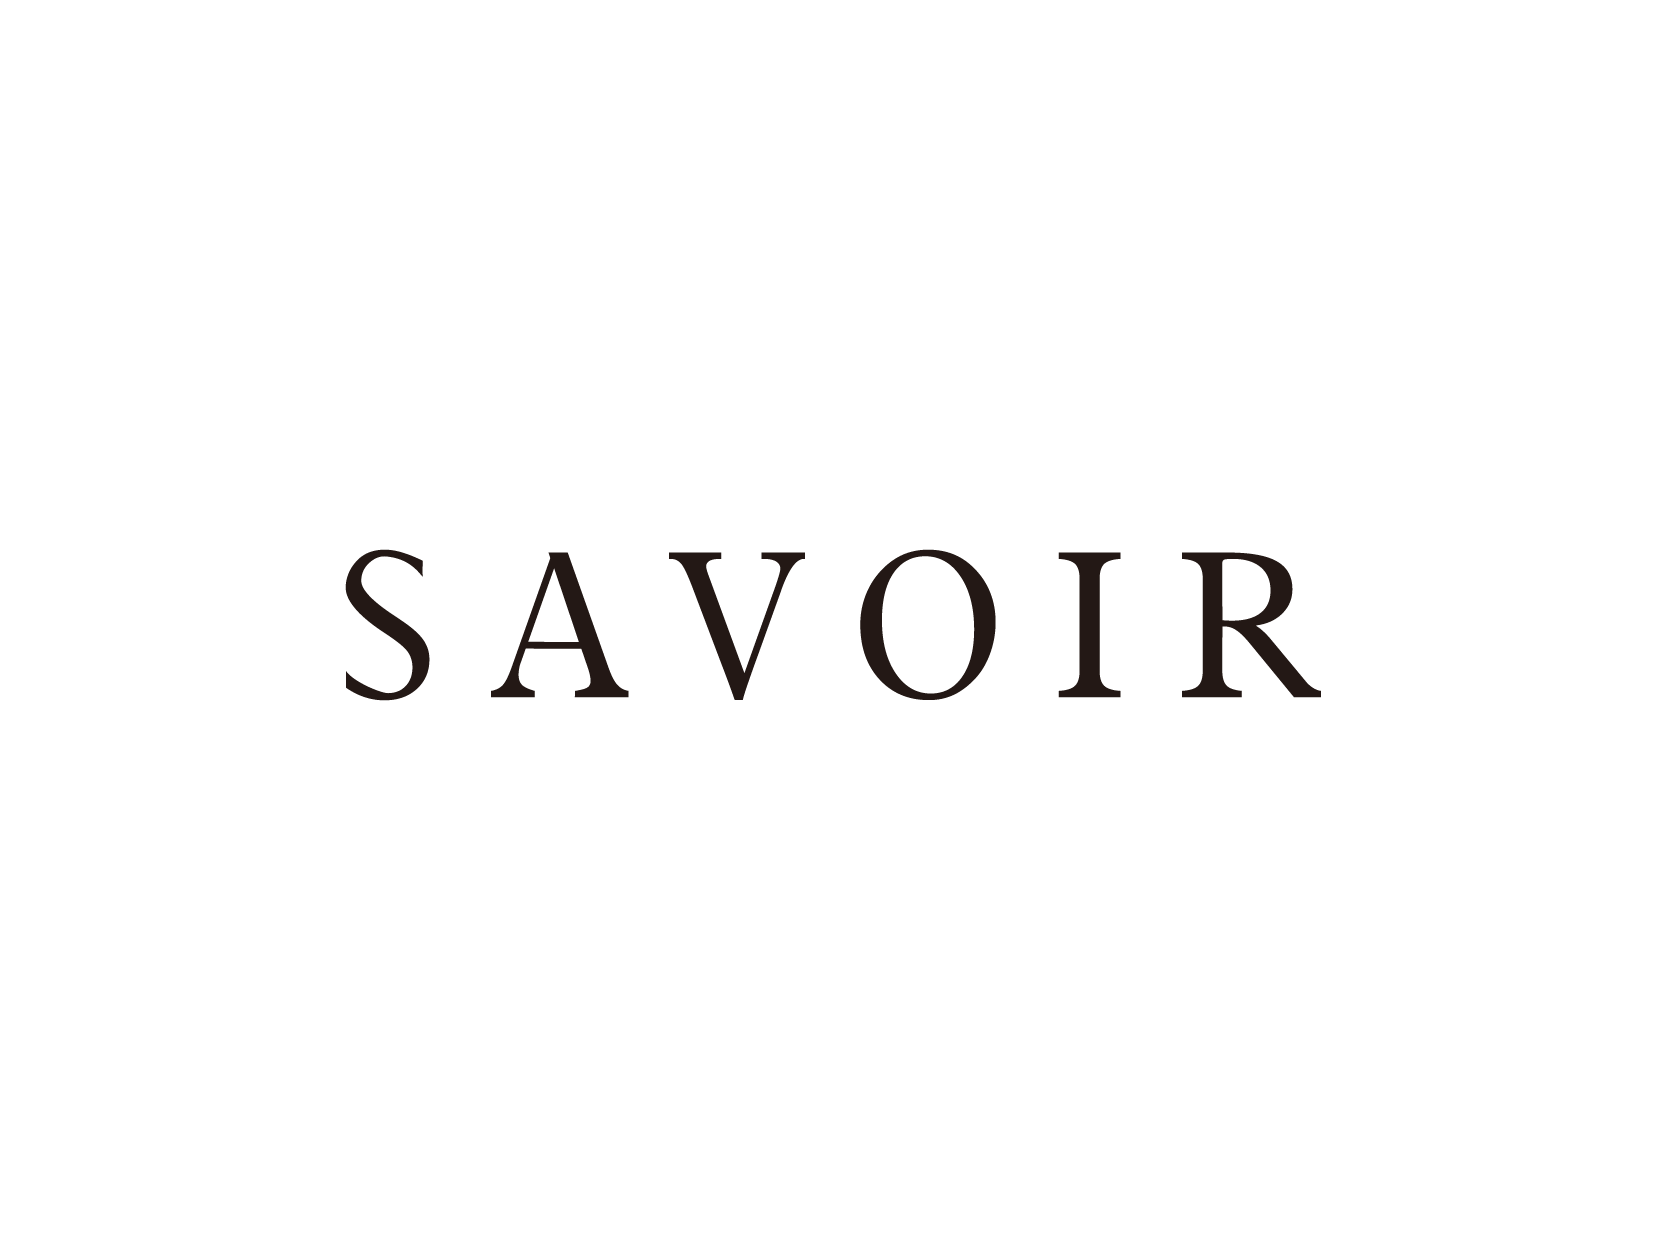 Savoirlogo标志设计